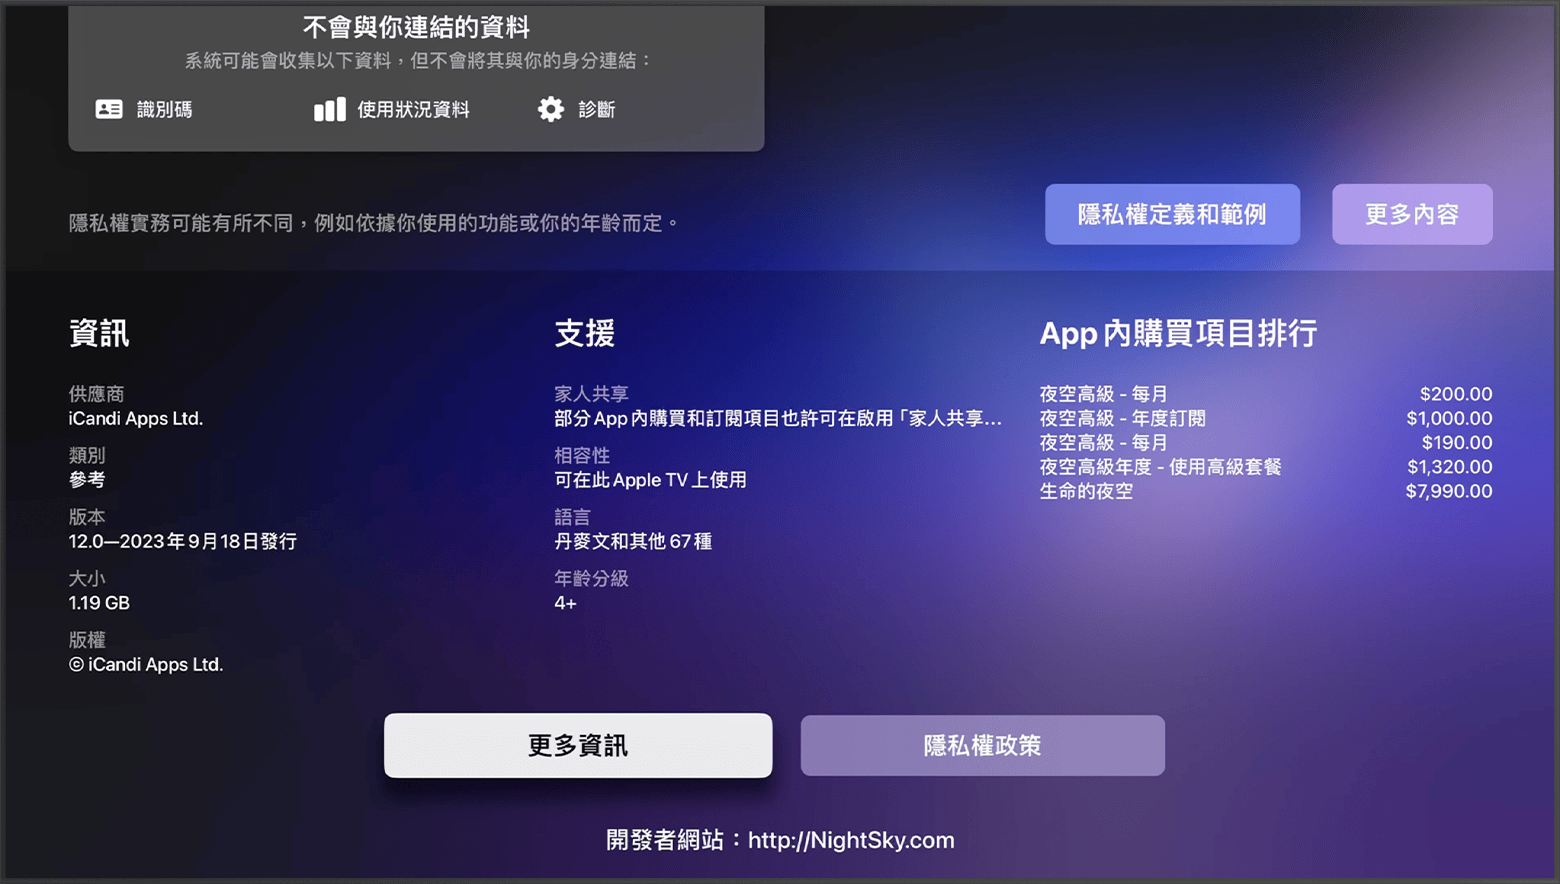 在 Apple TV 上的 App Store 中，開發者的網站位於 App 頁面底部。